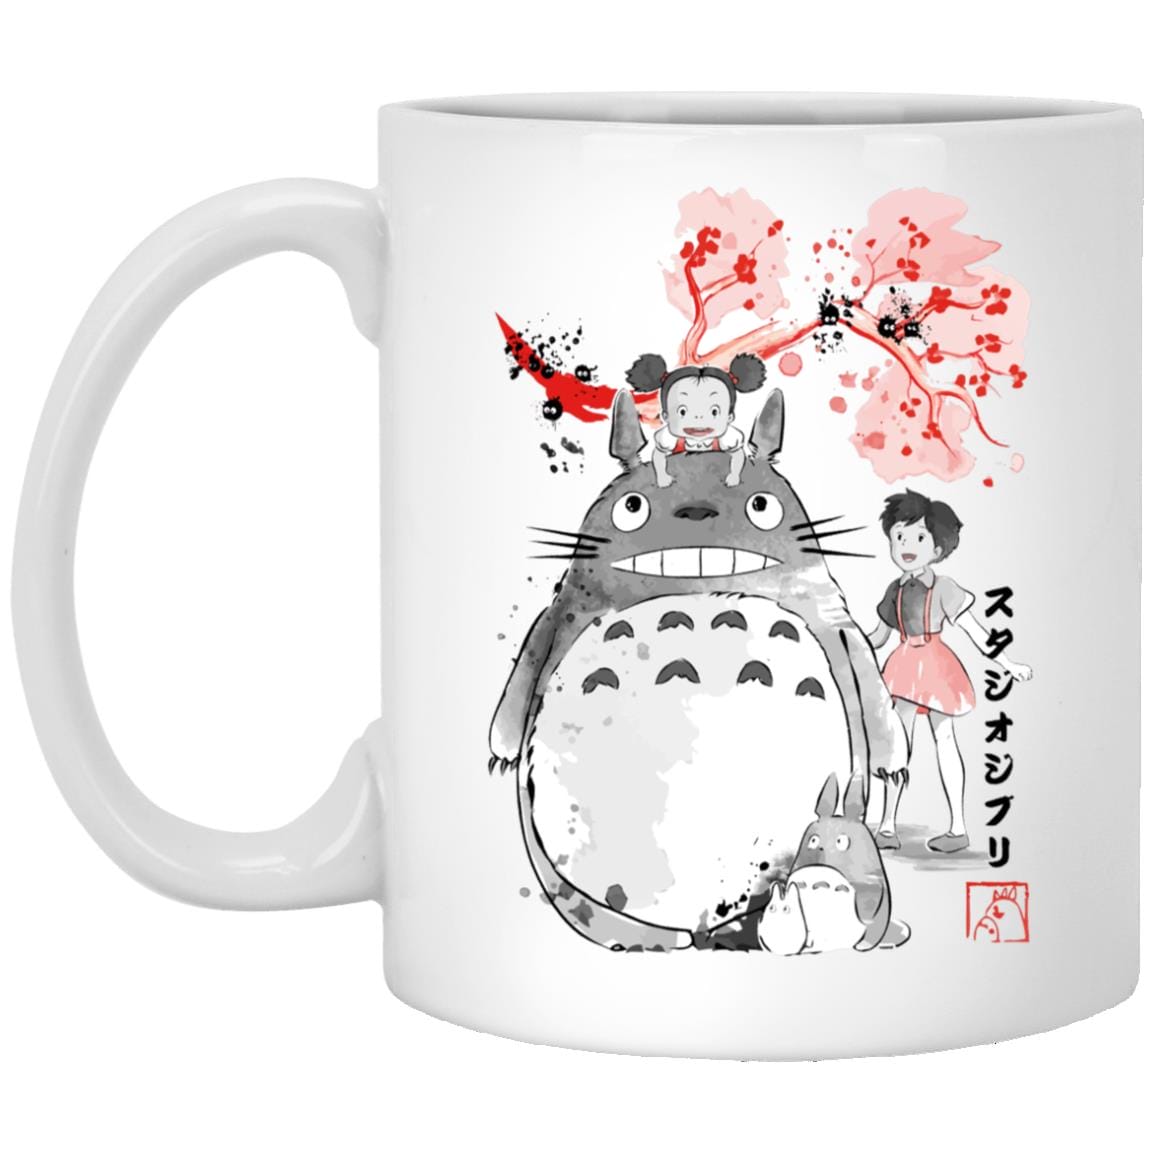 Totoro and the Girls by Sakura Flower Mug